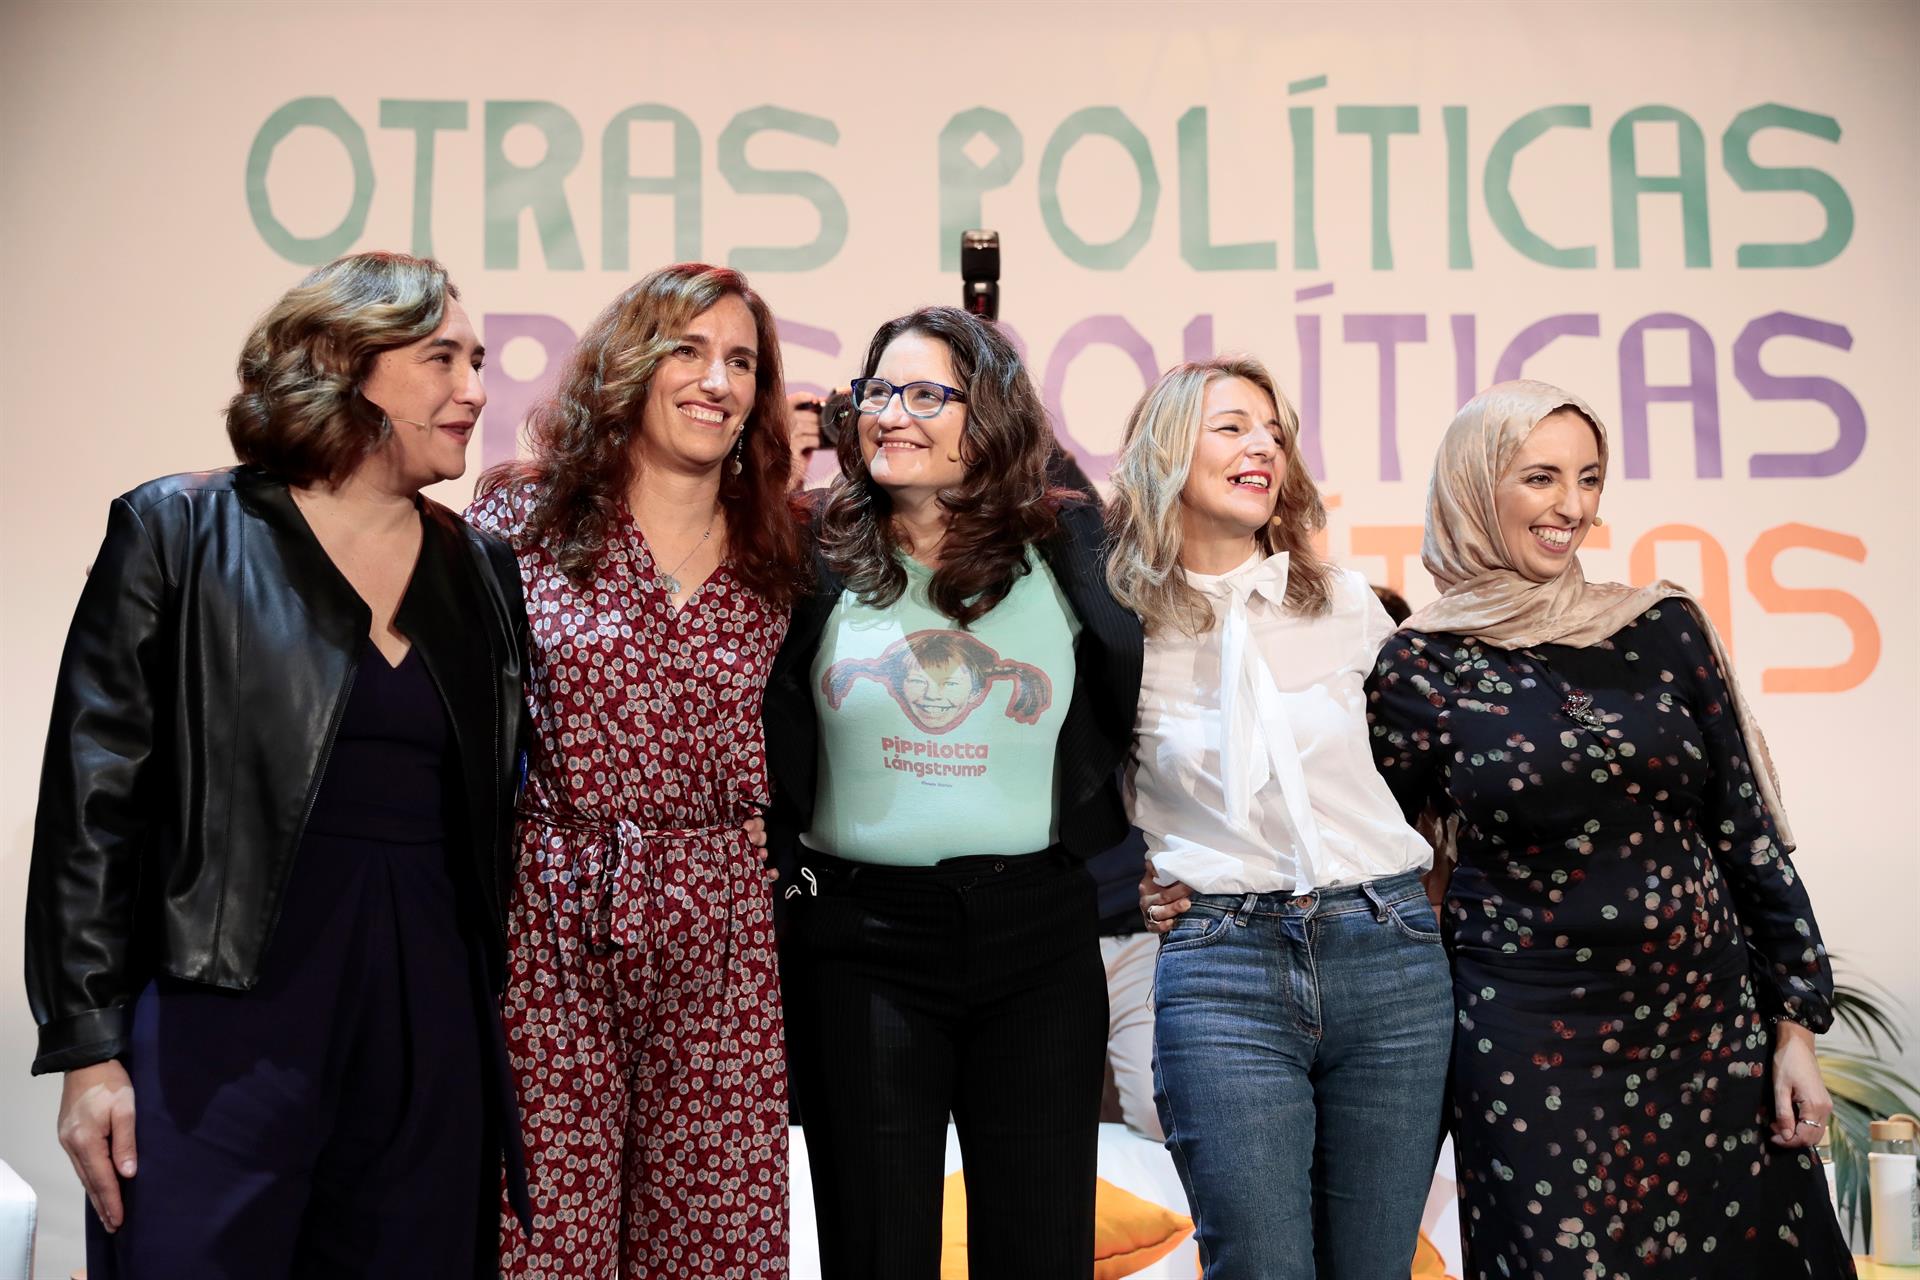 Las lideresas de izquierda aseguran que "estas cinco mujeres tienen en común que son creíbles y libres"